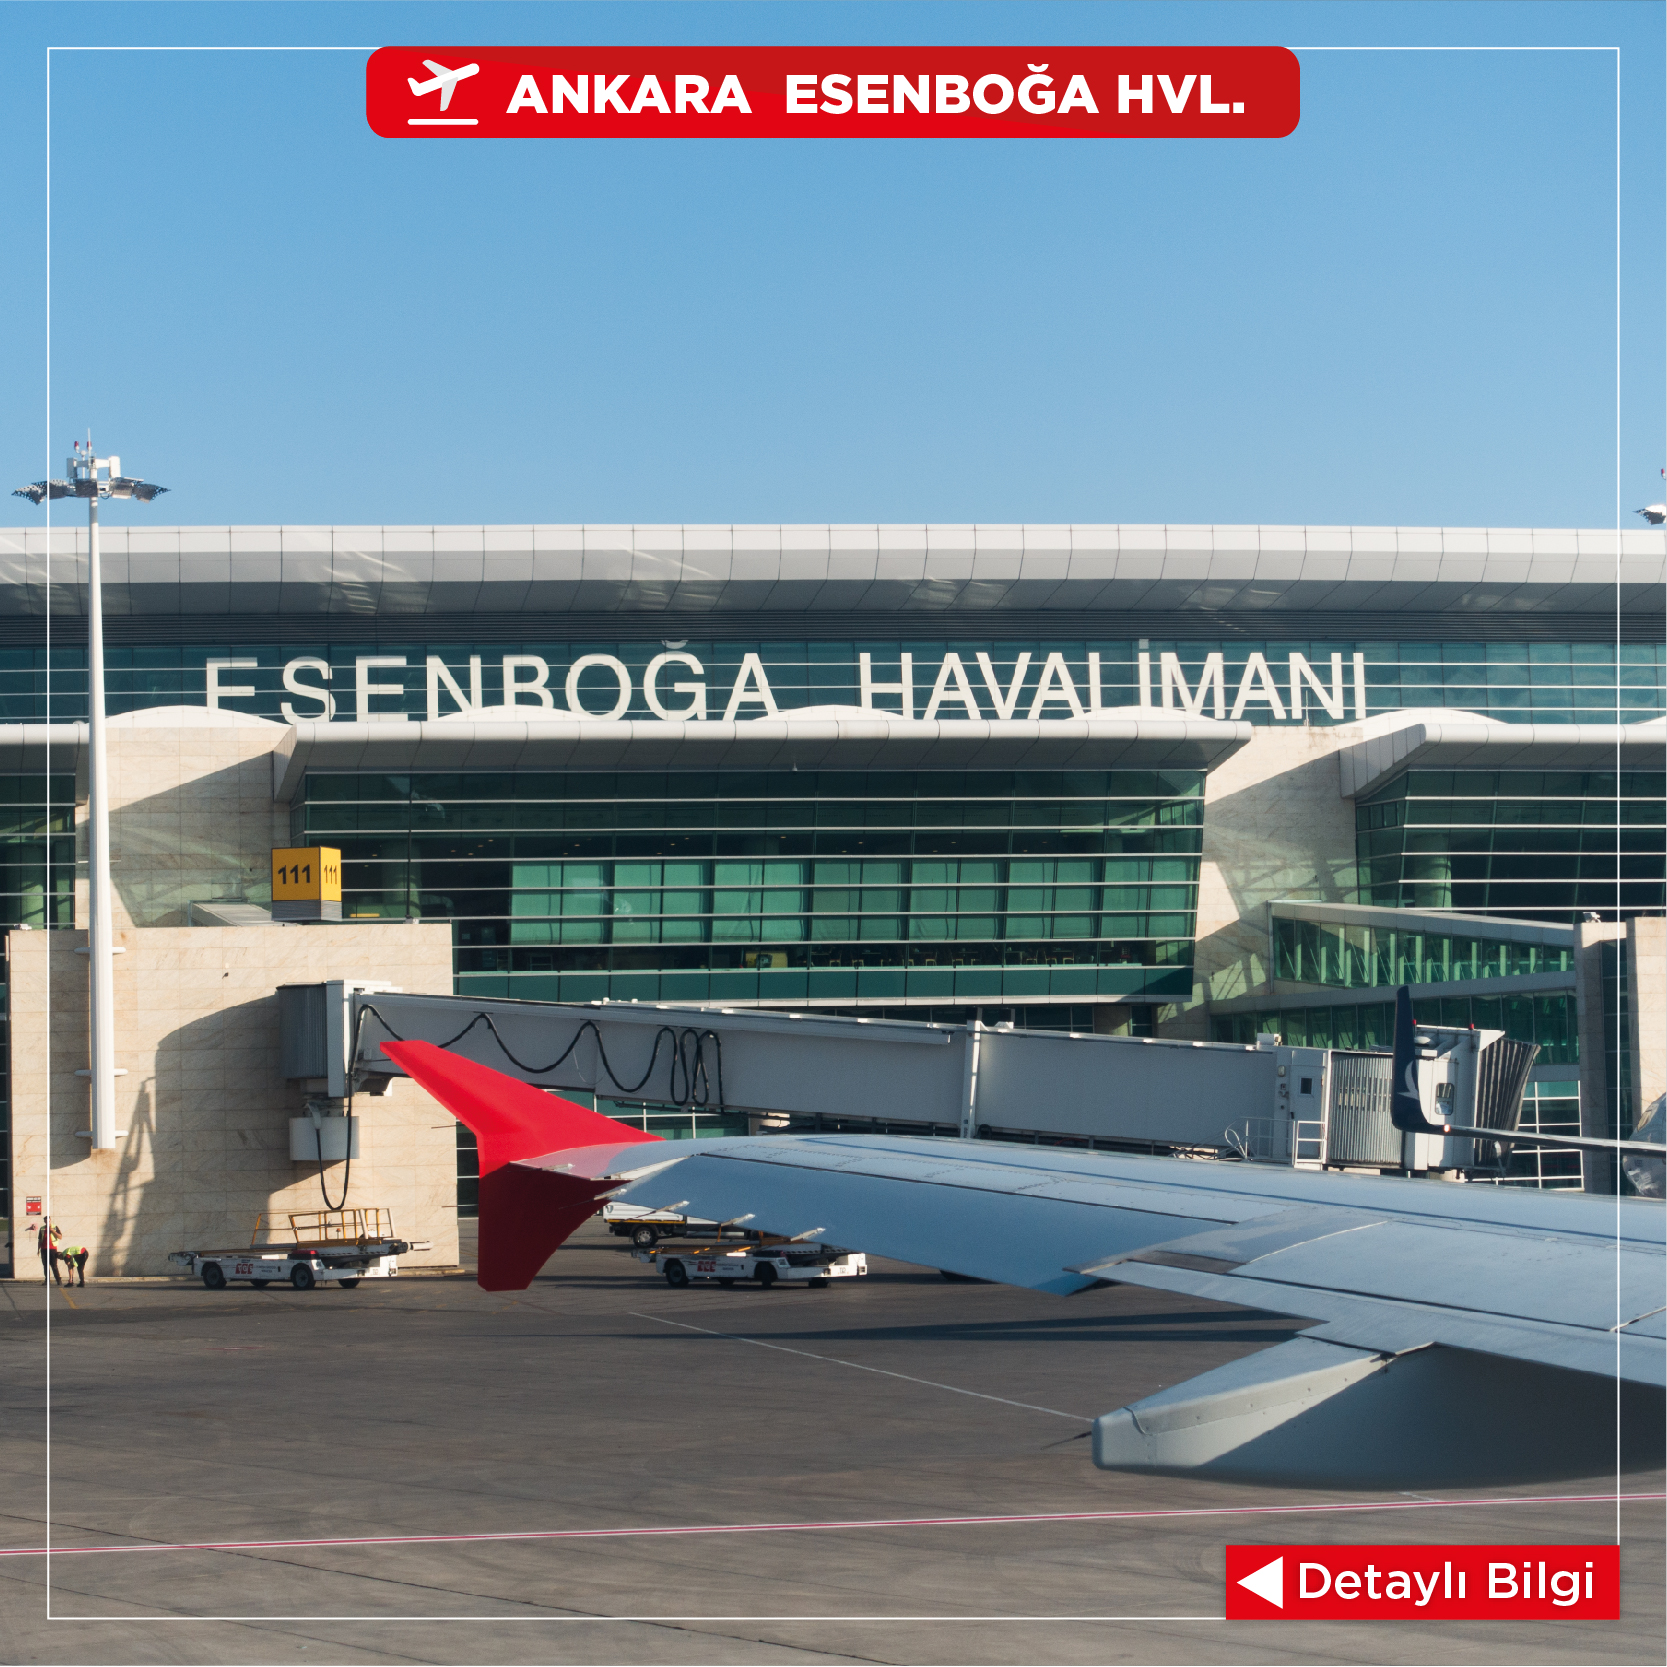 Ankara Airport Car Rental